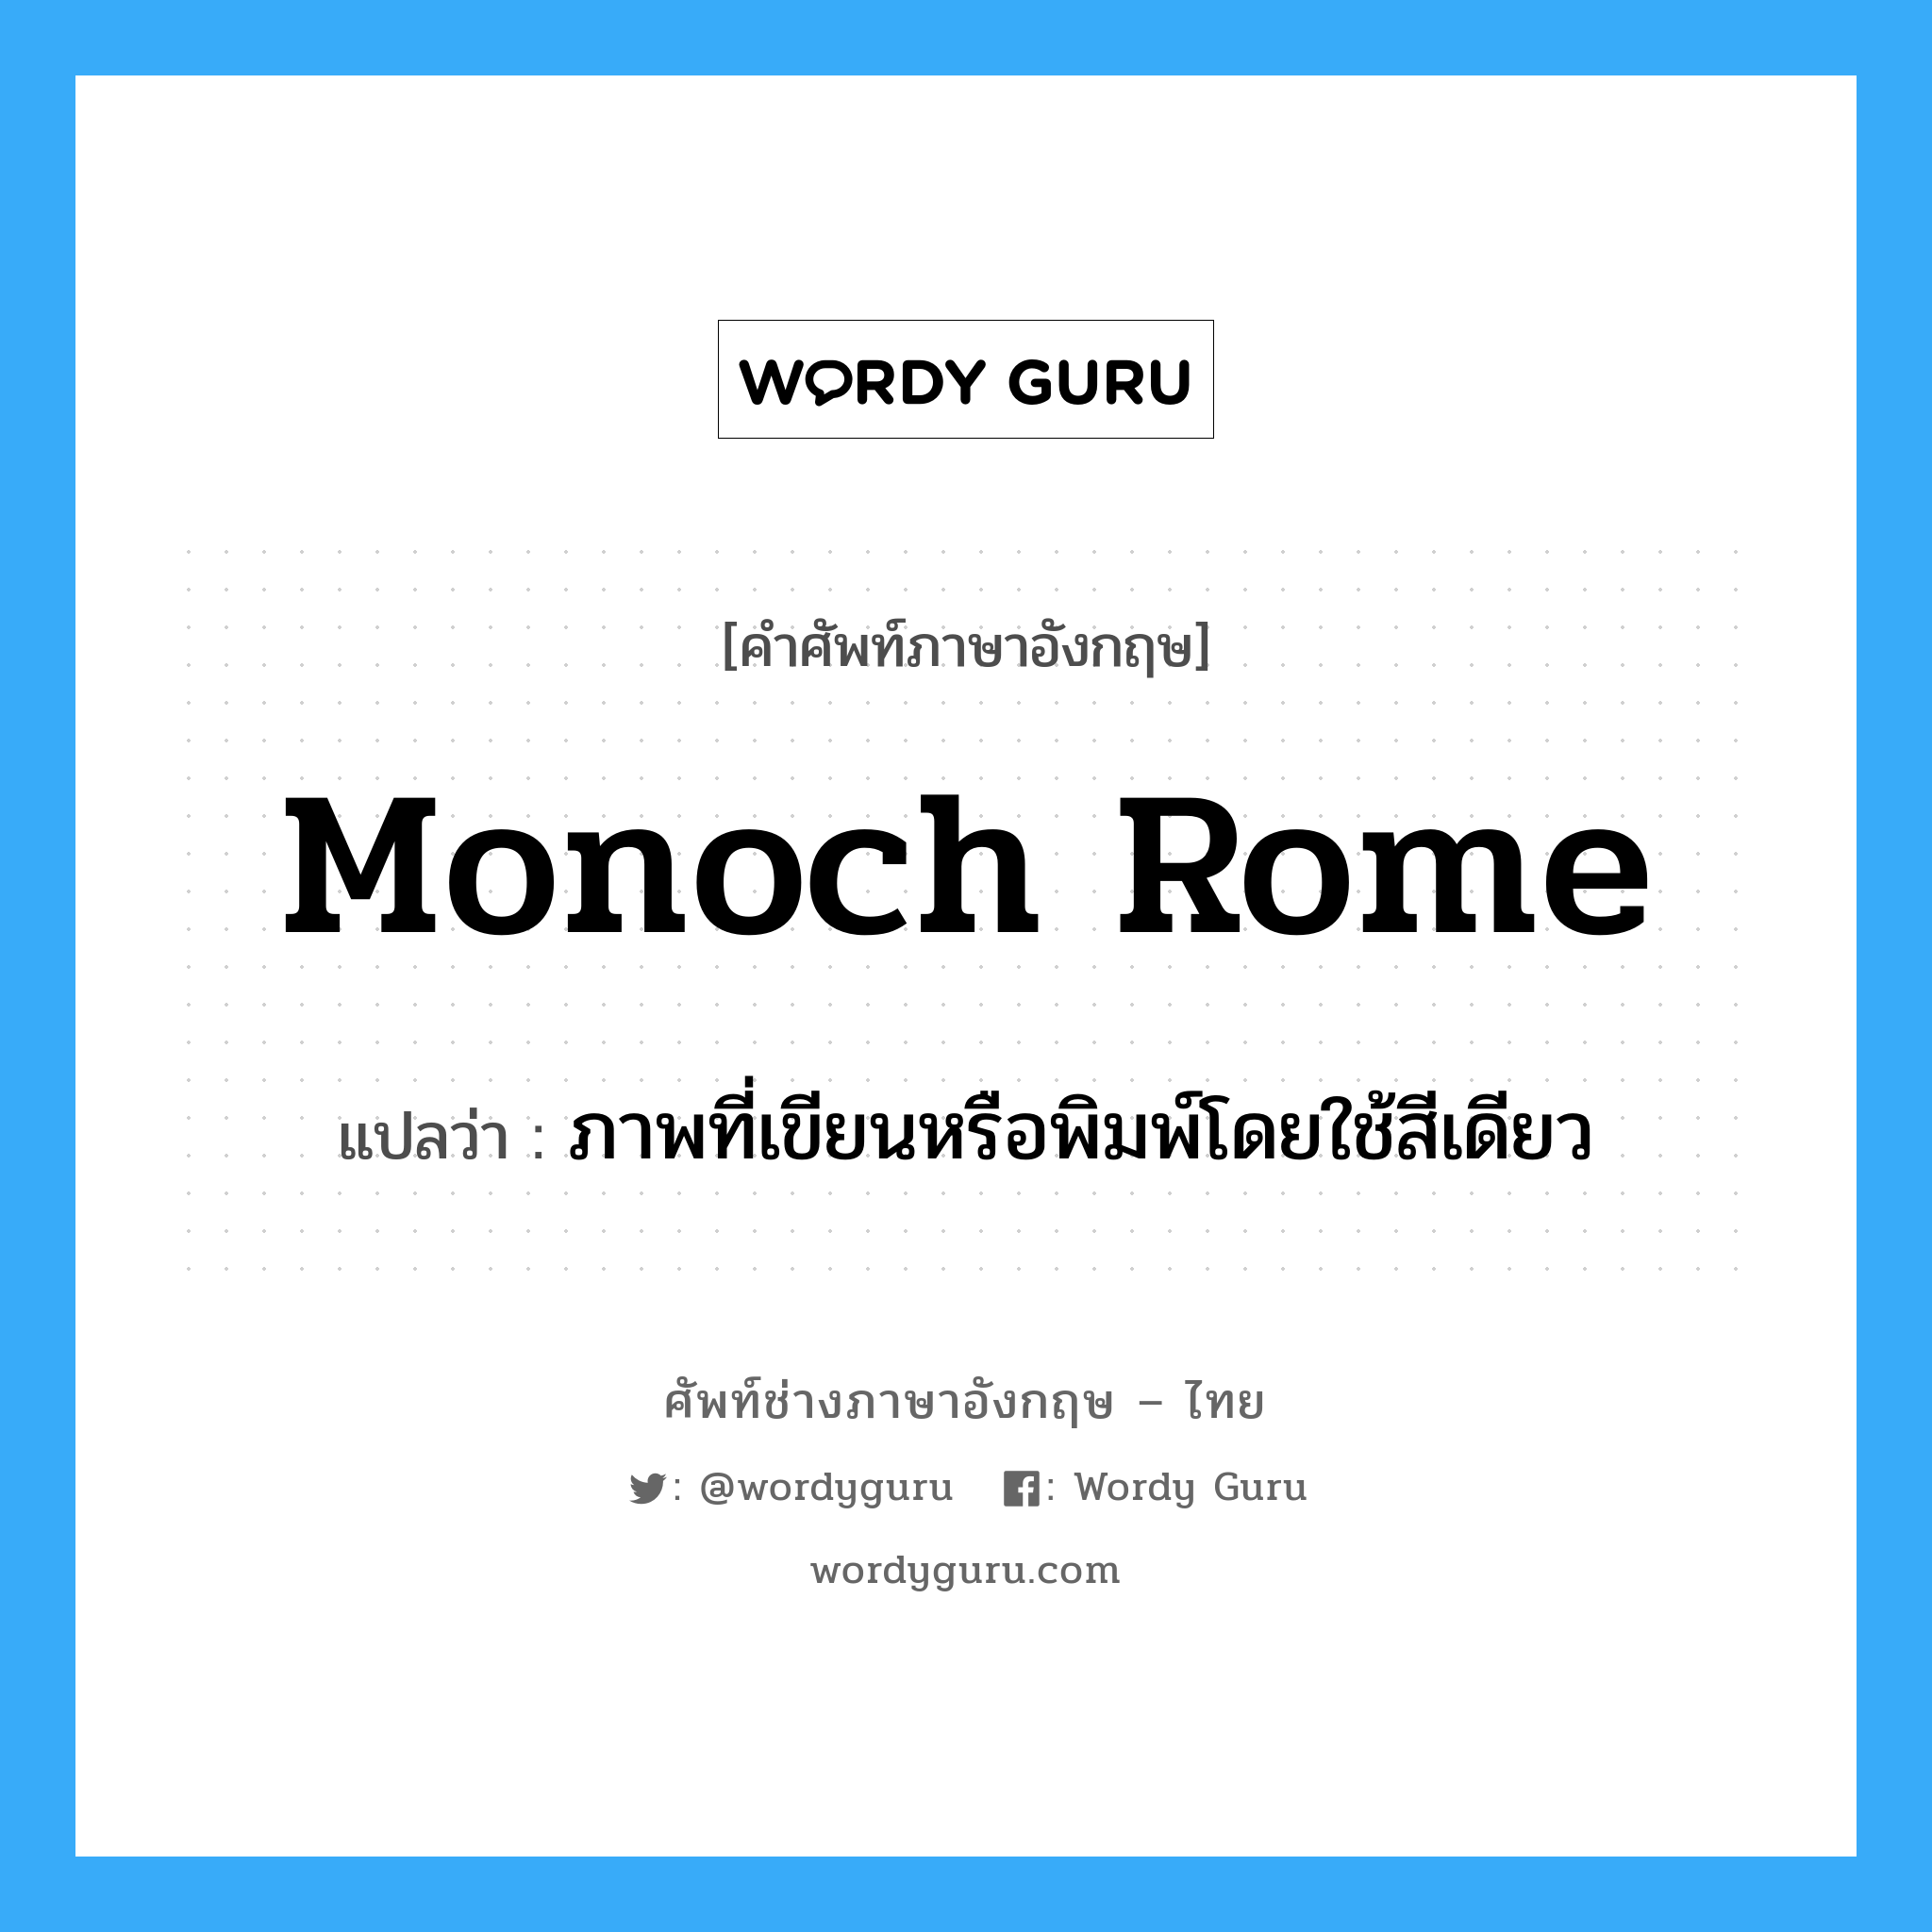 monoch rome แปลว่า?, คำศัพท์ช่างภาษาอังกฤษ - ไทย monoch rome คำศัพท์ภาษาอังกฤษ monoch rome แปลว่า ภาพที่เขียนหรือพิมพ์โดยใช้สีเดียว